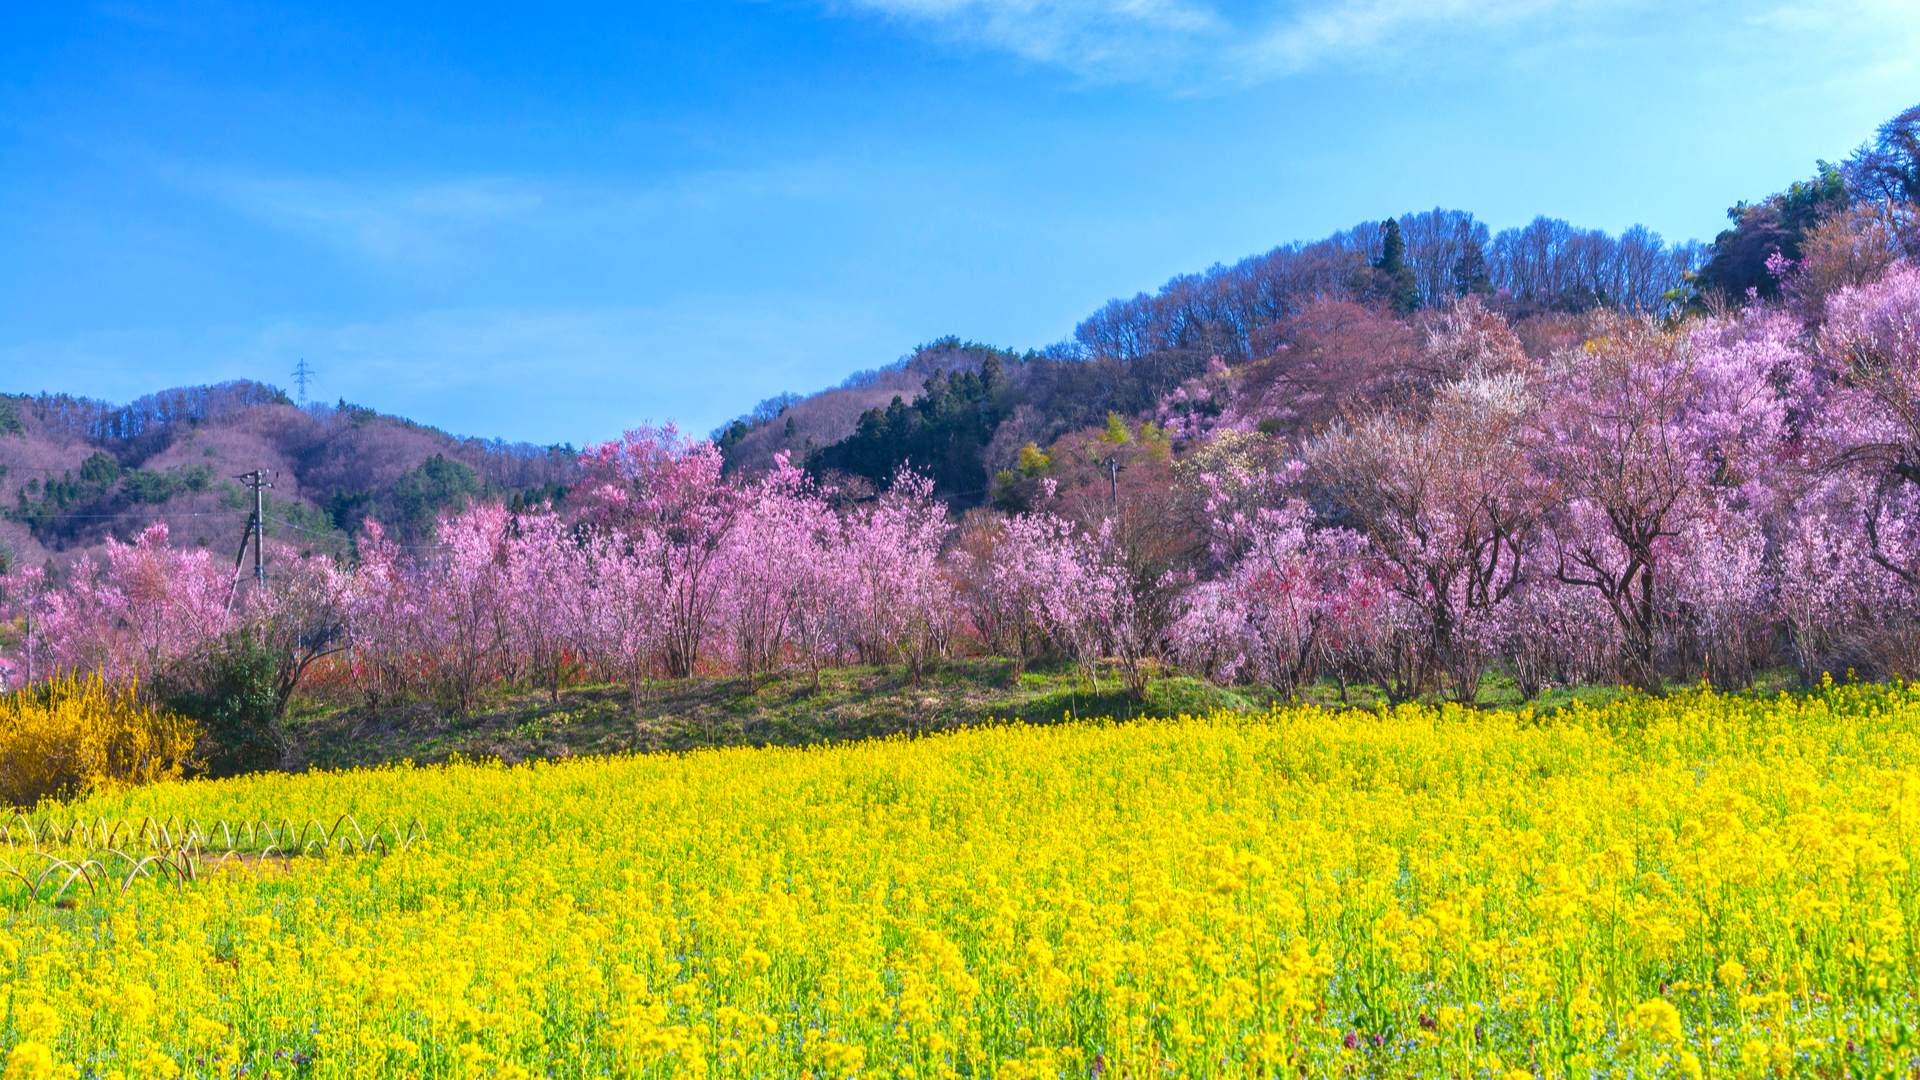 ピンクと黄色の絶景が広がる 全国の人気 菜の花と桜 名所11選 Trip Editor